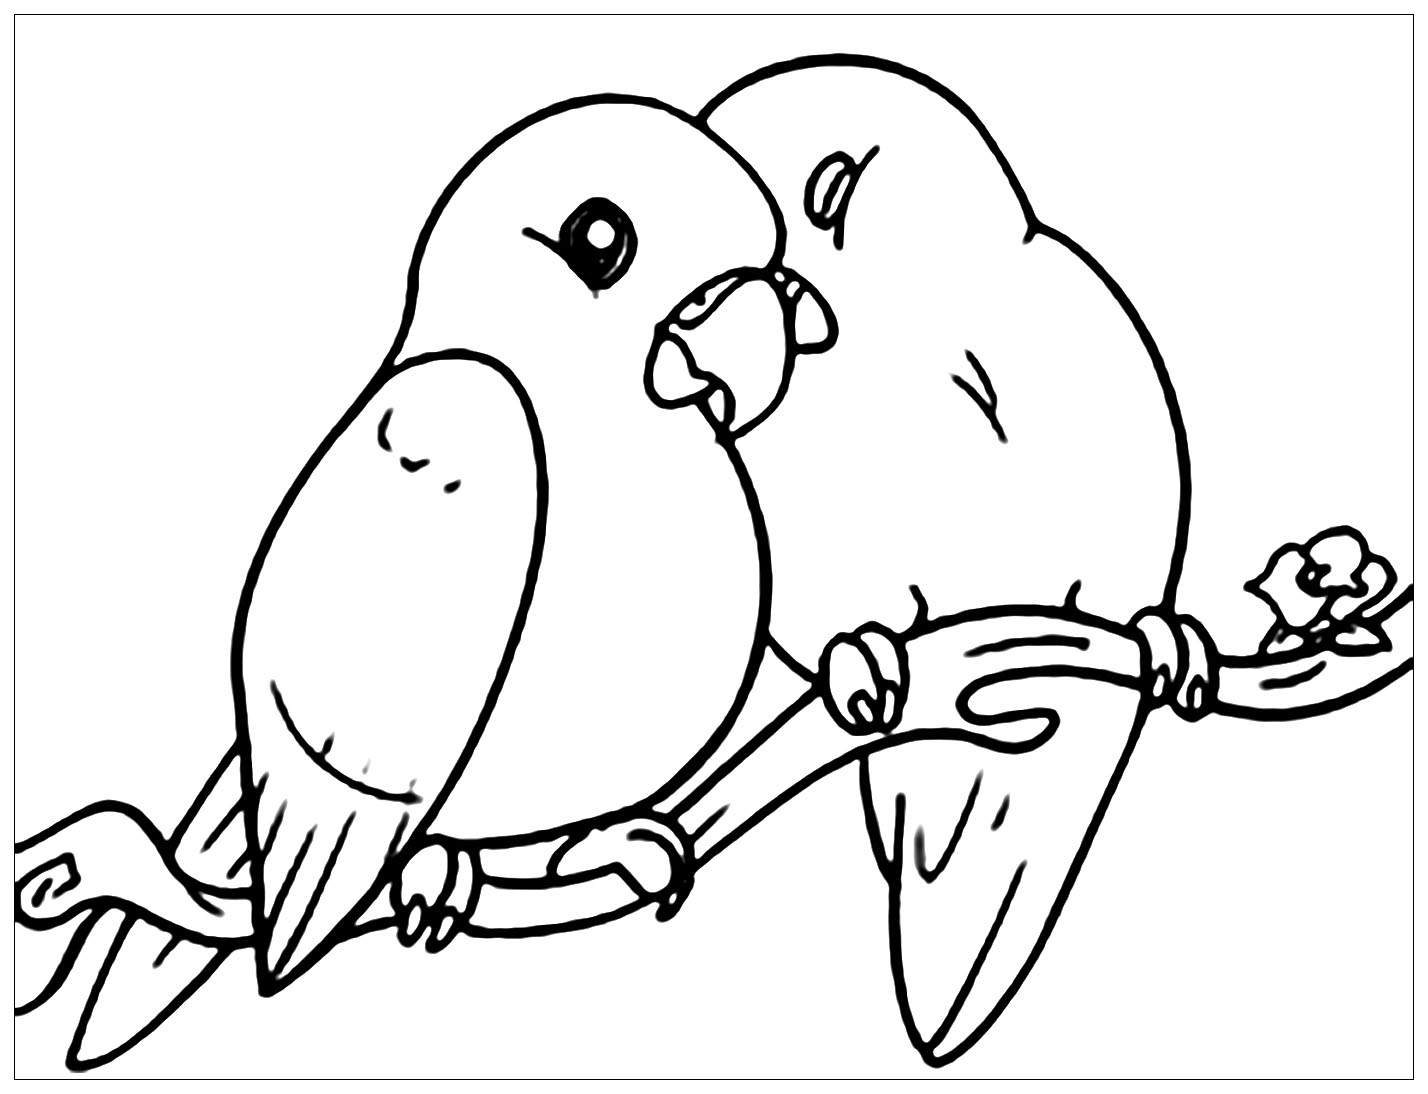 Ces petits oiseaux filent le parfait amour sur leur branche